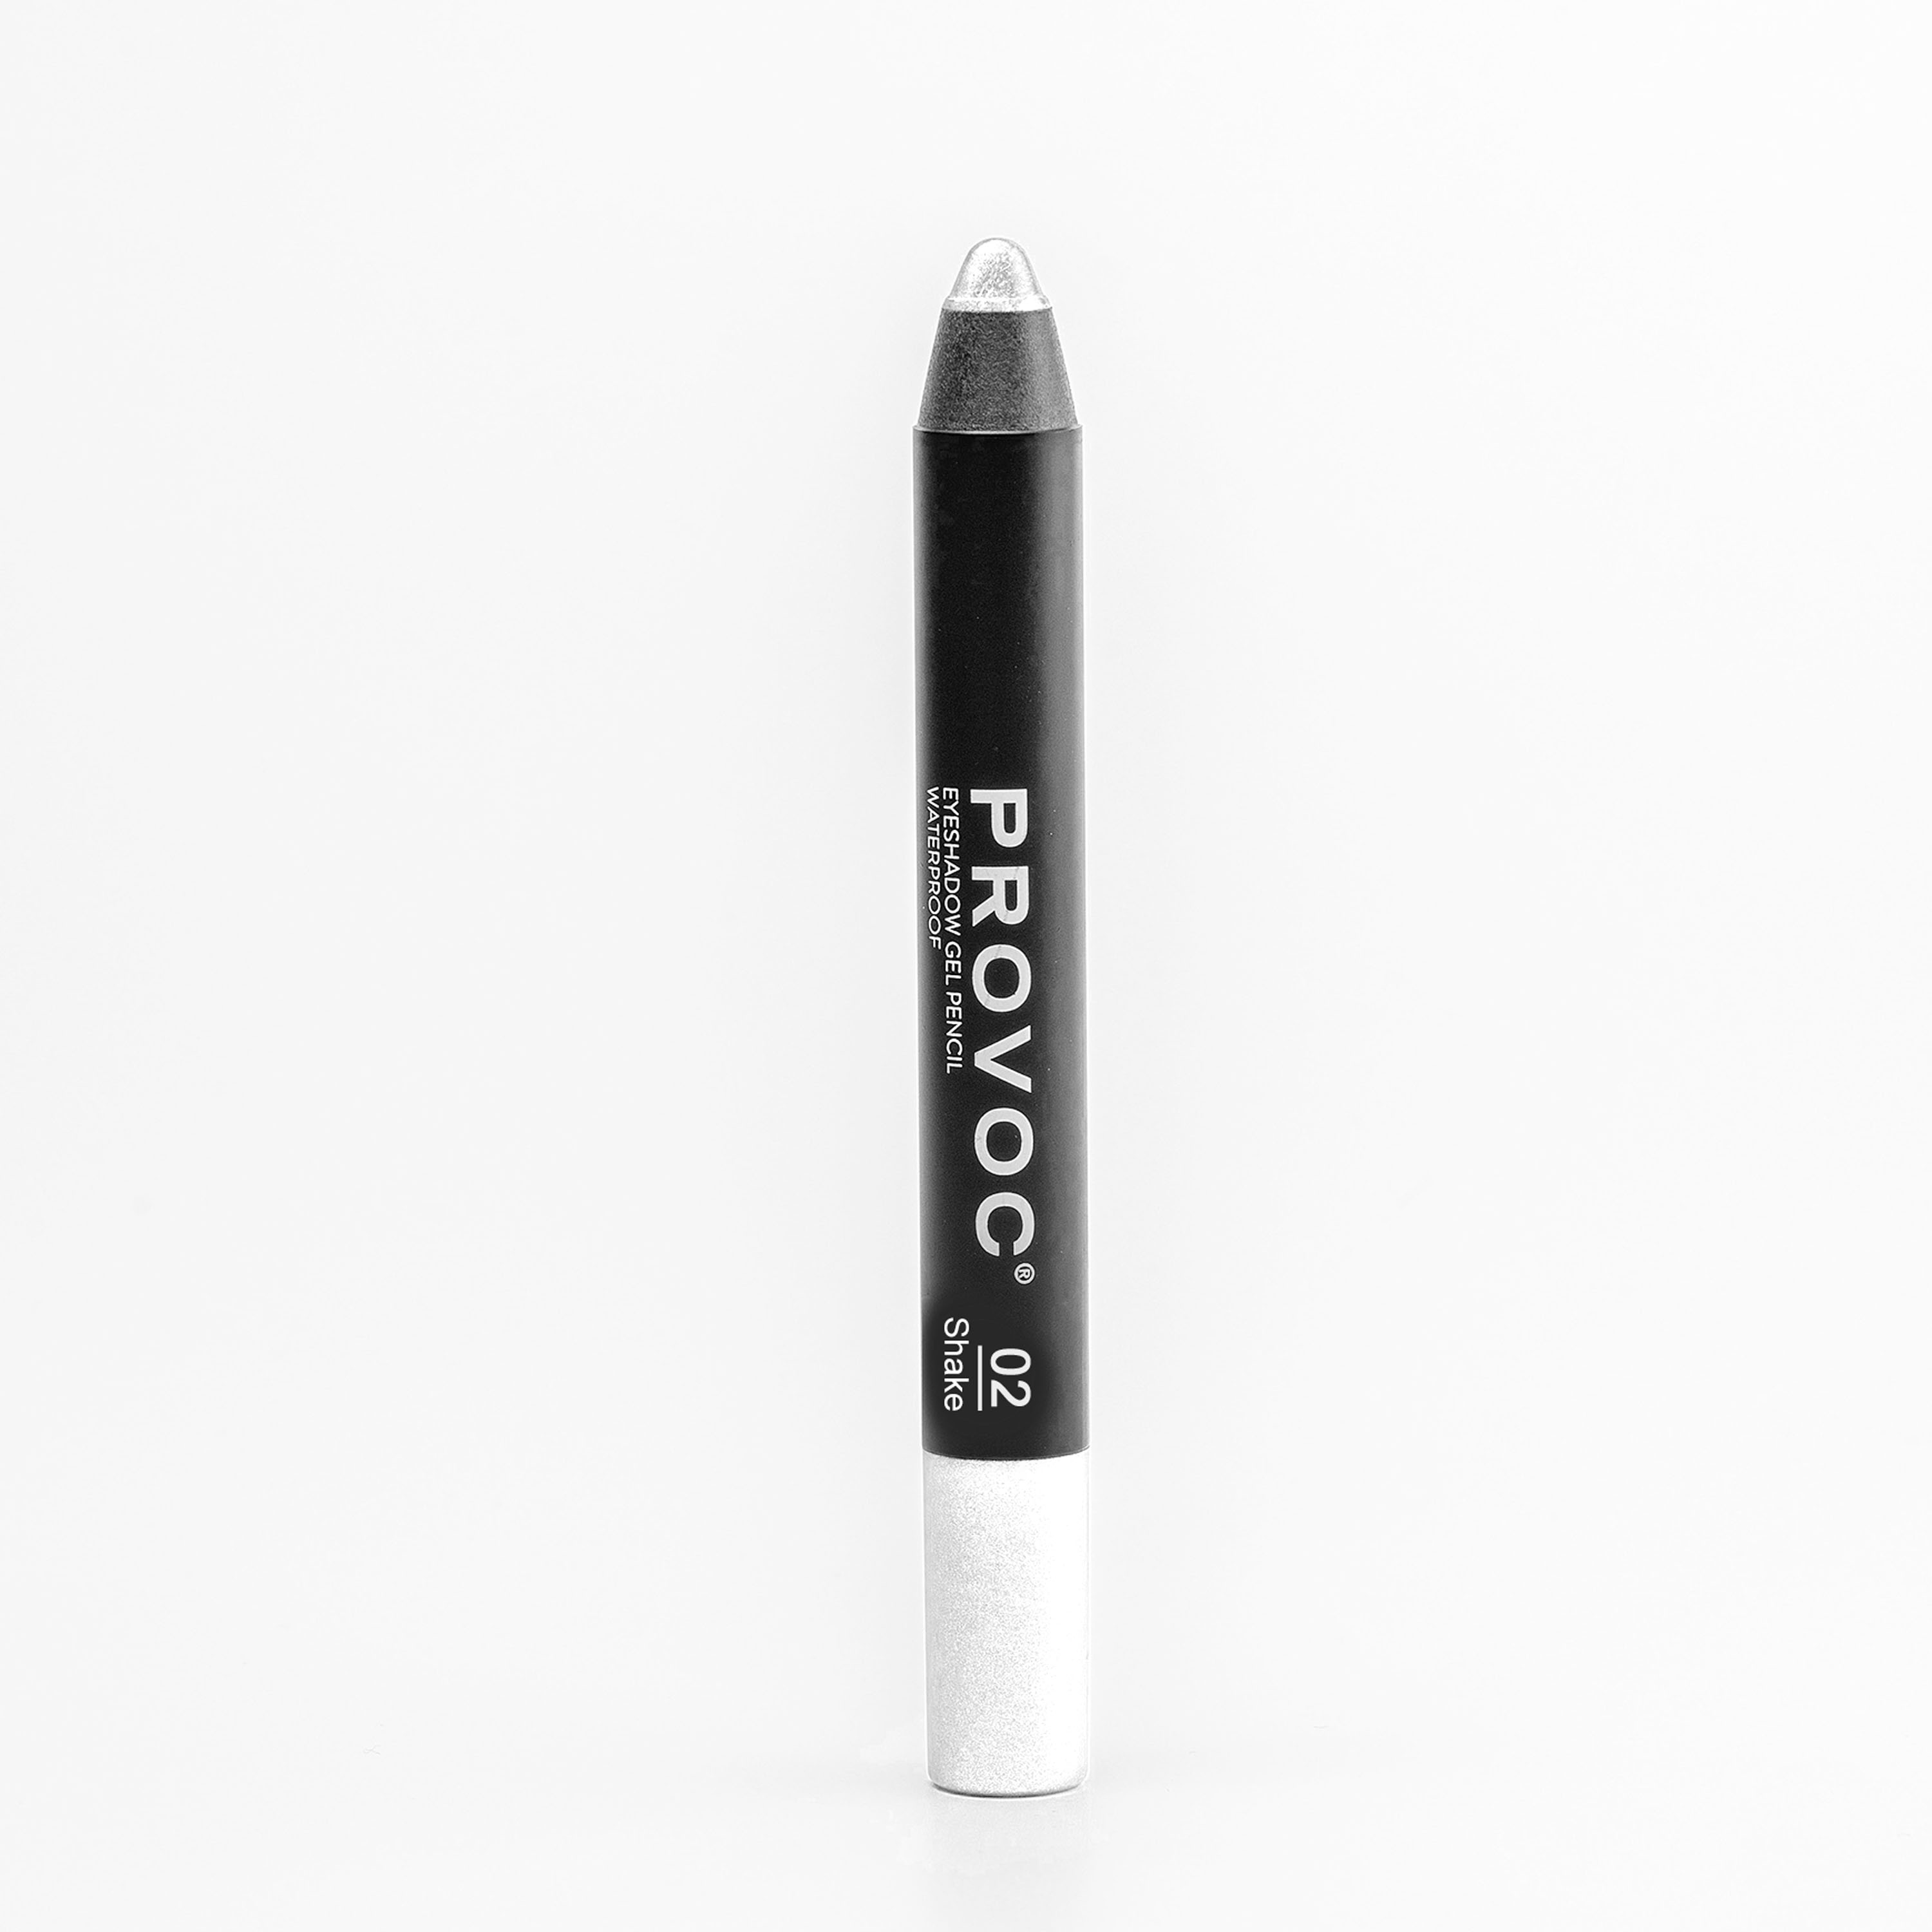 Тени для век Provoc Waterproof Eyeshadow Gel Pencil 02 Жемчужный 2,3 г тени карандаш водостойкие eyeshadow pencil pvep11 11 персиковый шиммер 1 шт